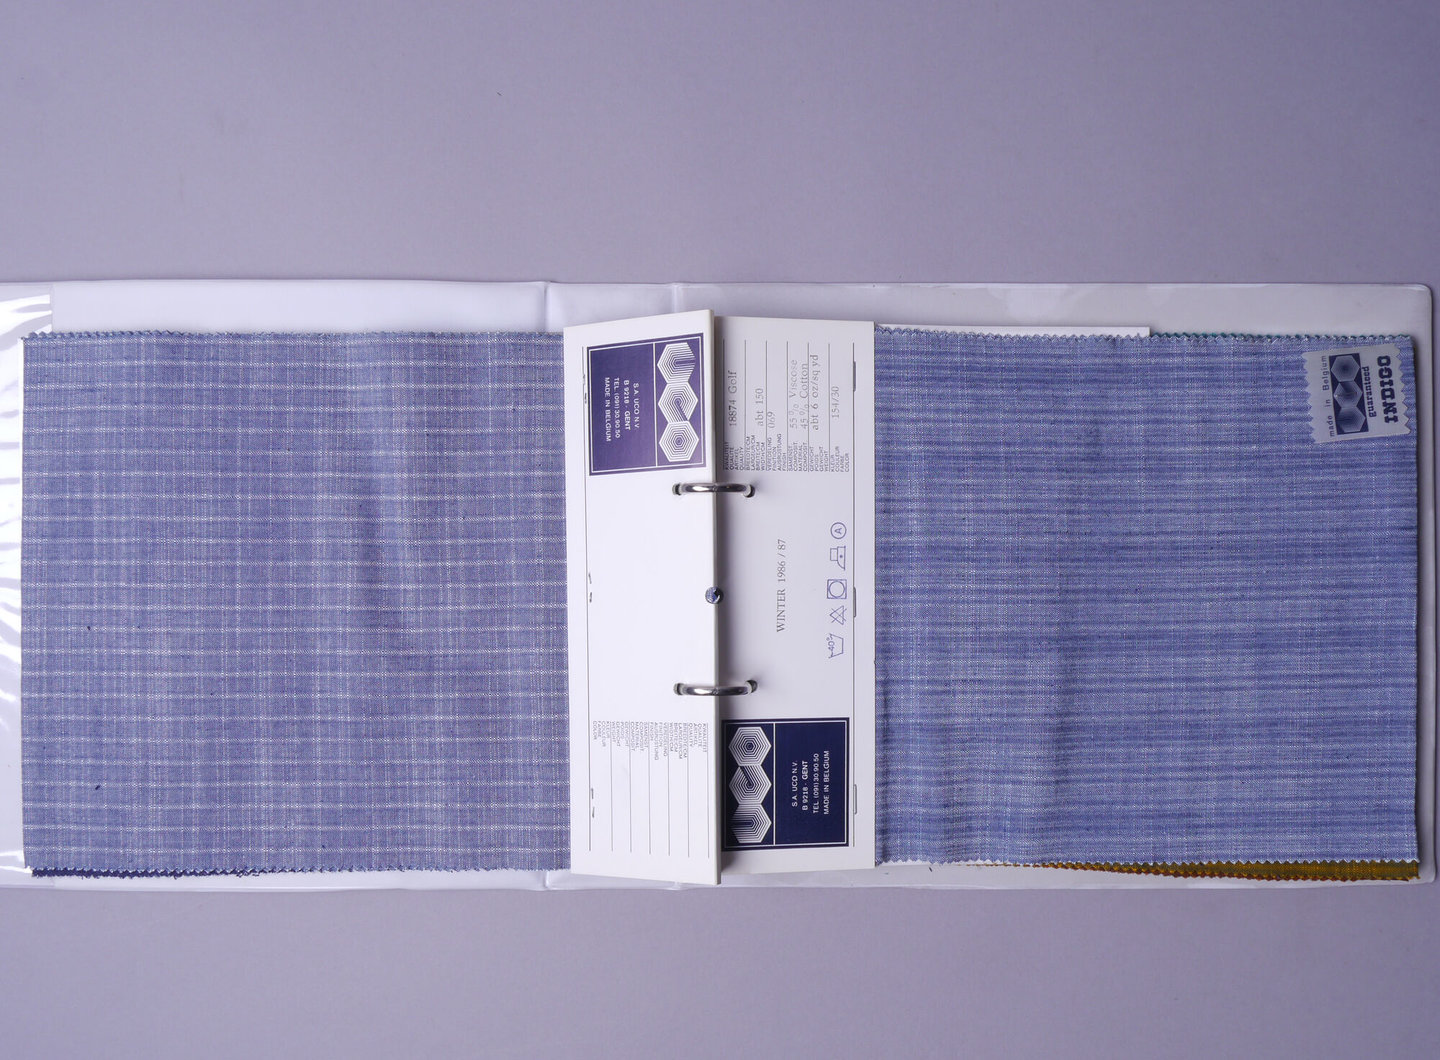 Staalboek met textielstalen van het merk UCO